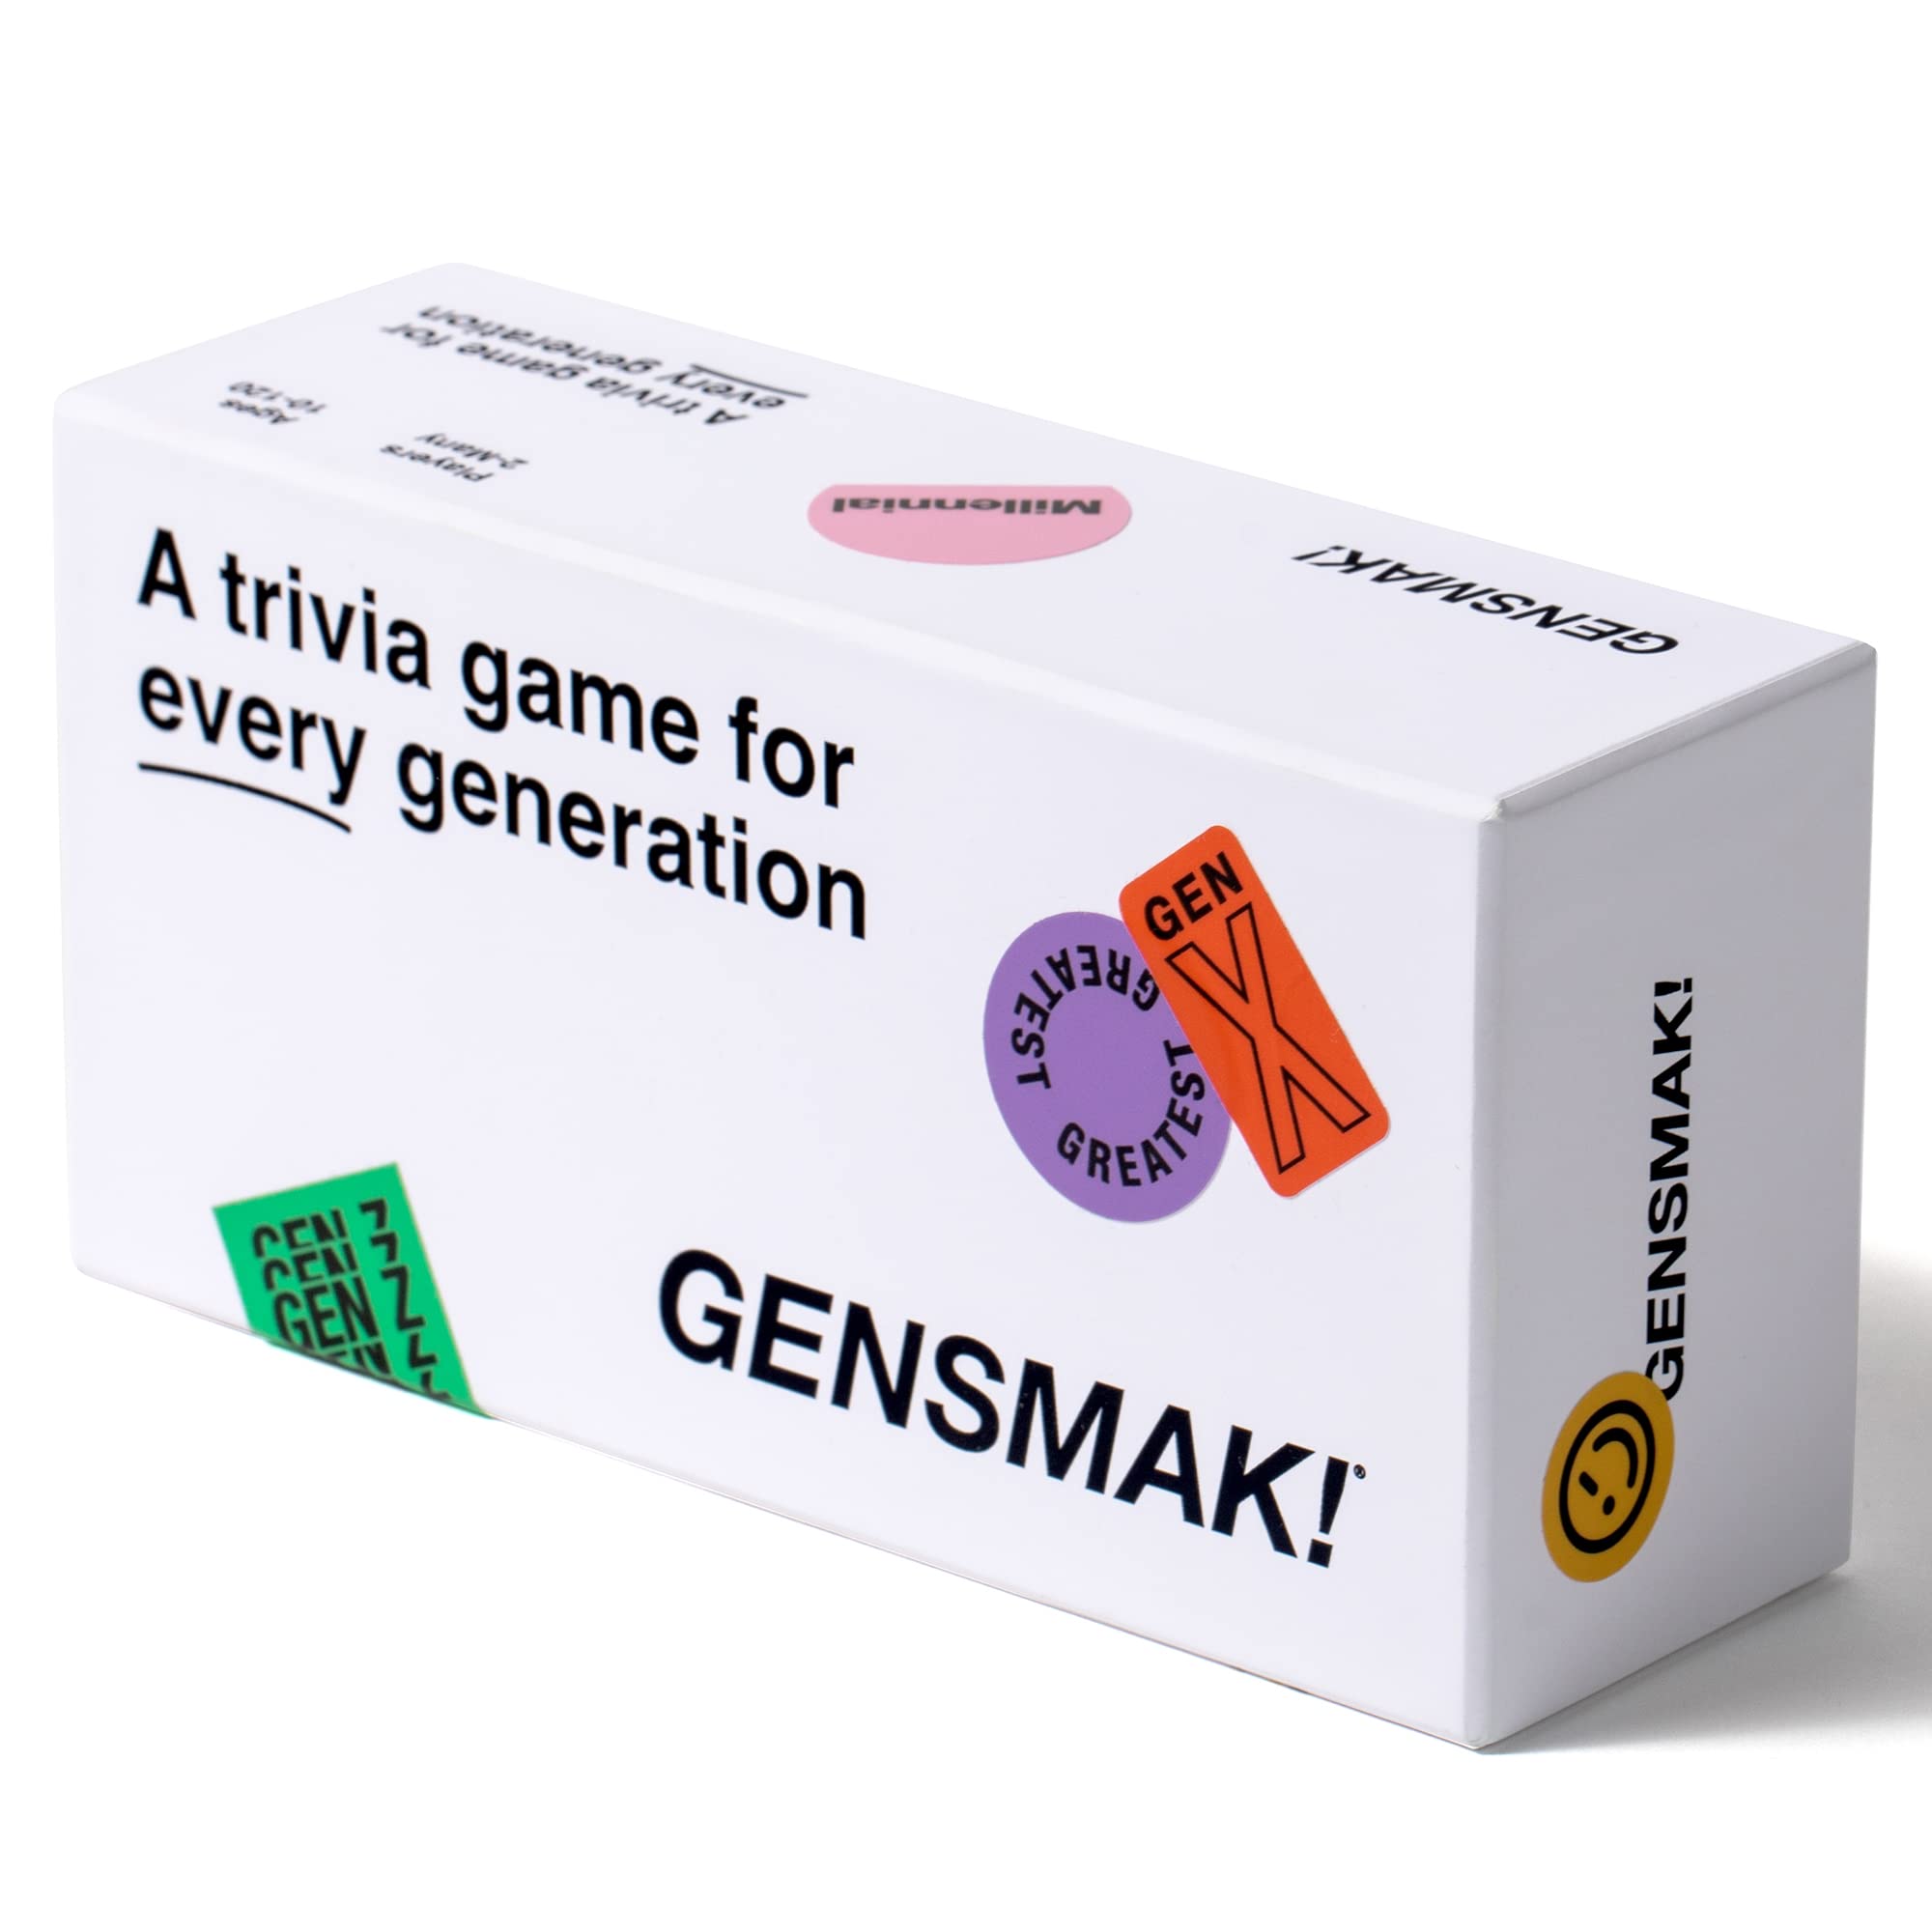 GENSMAK | North Game Den